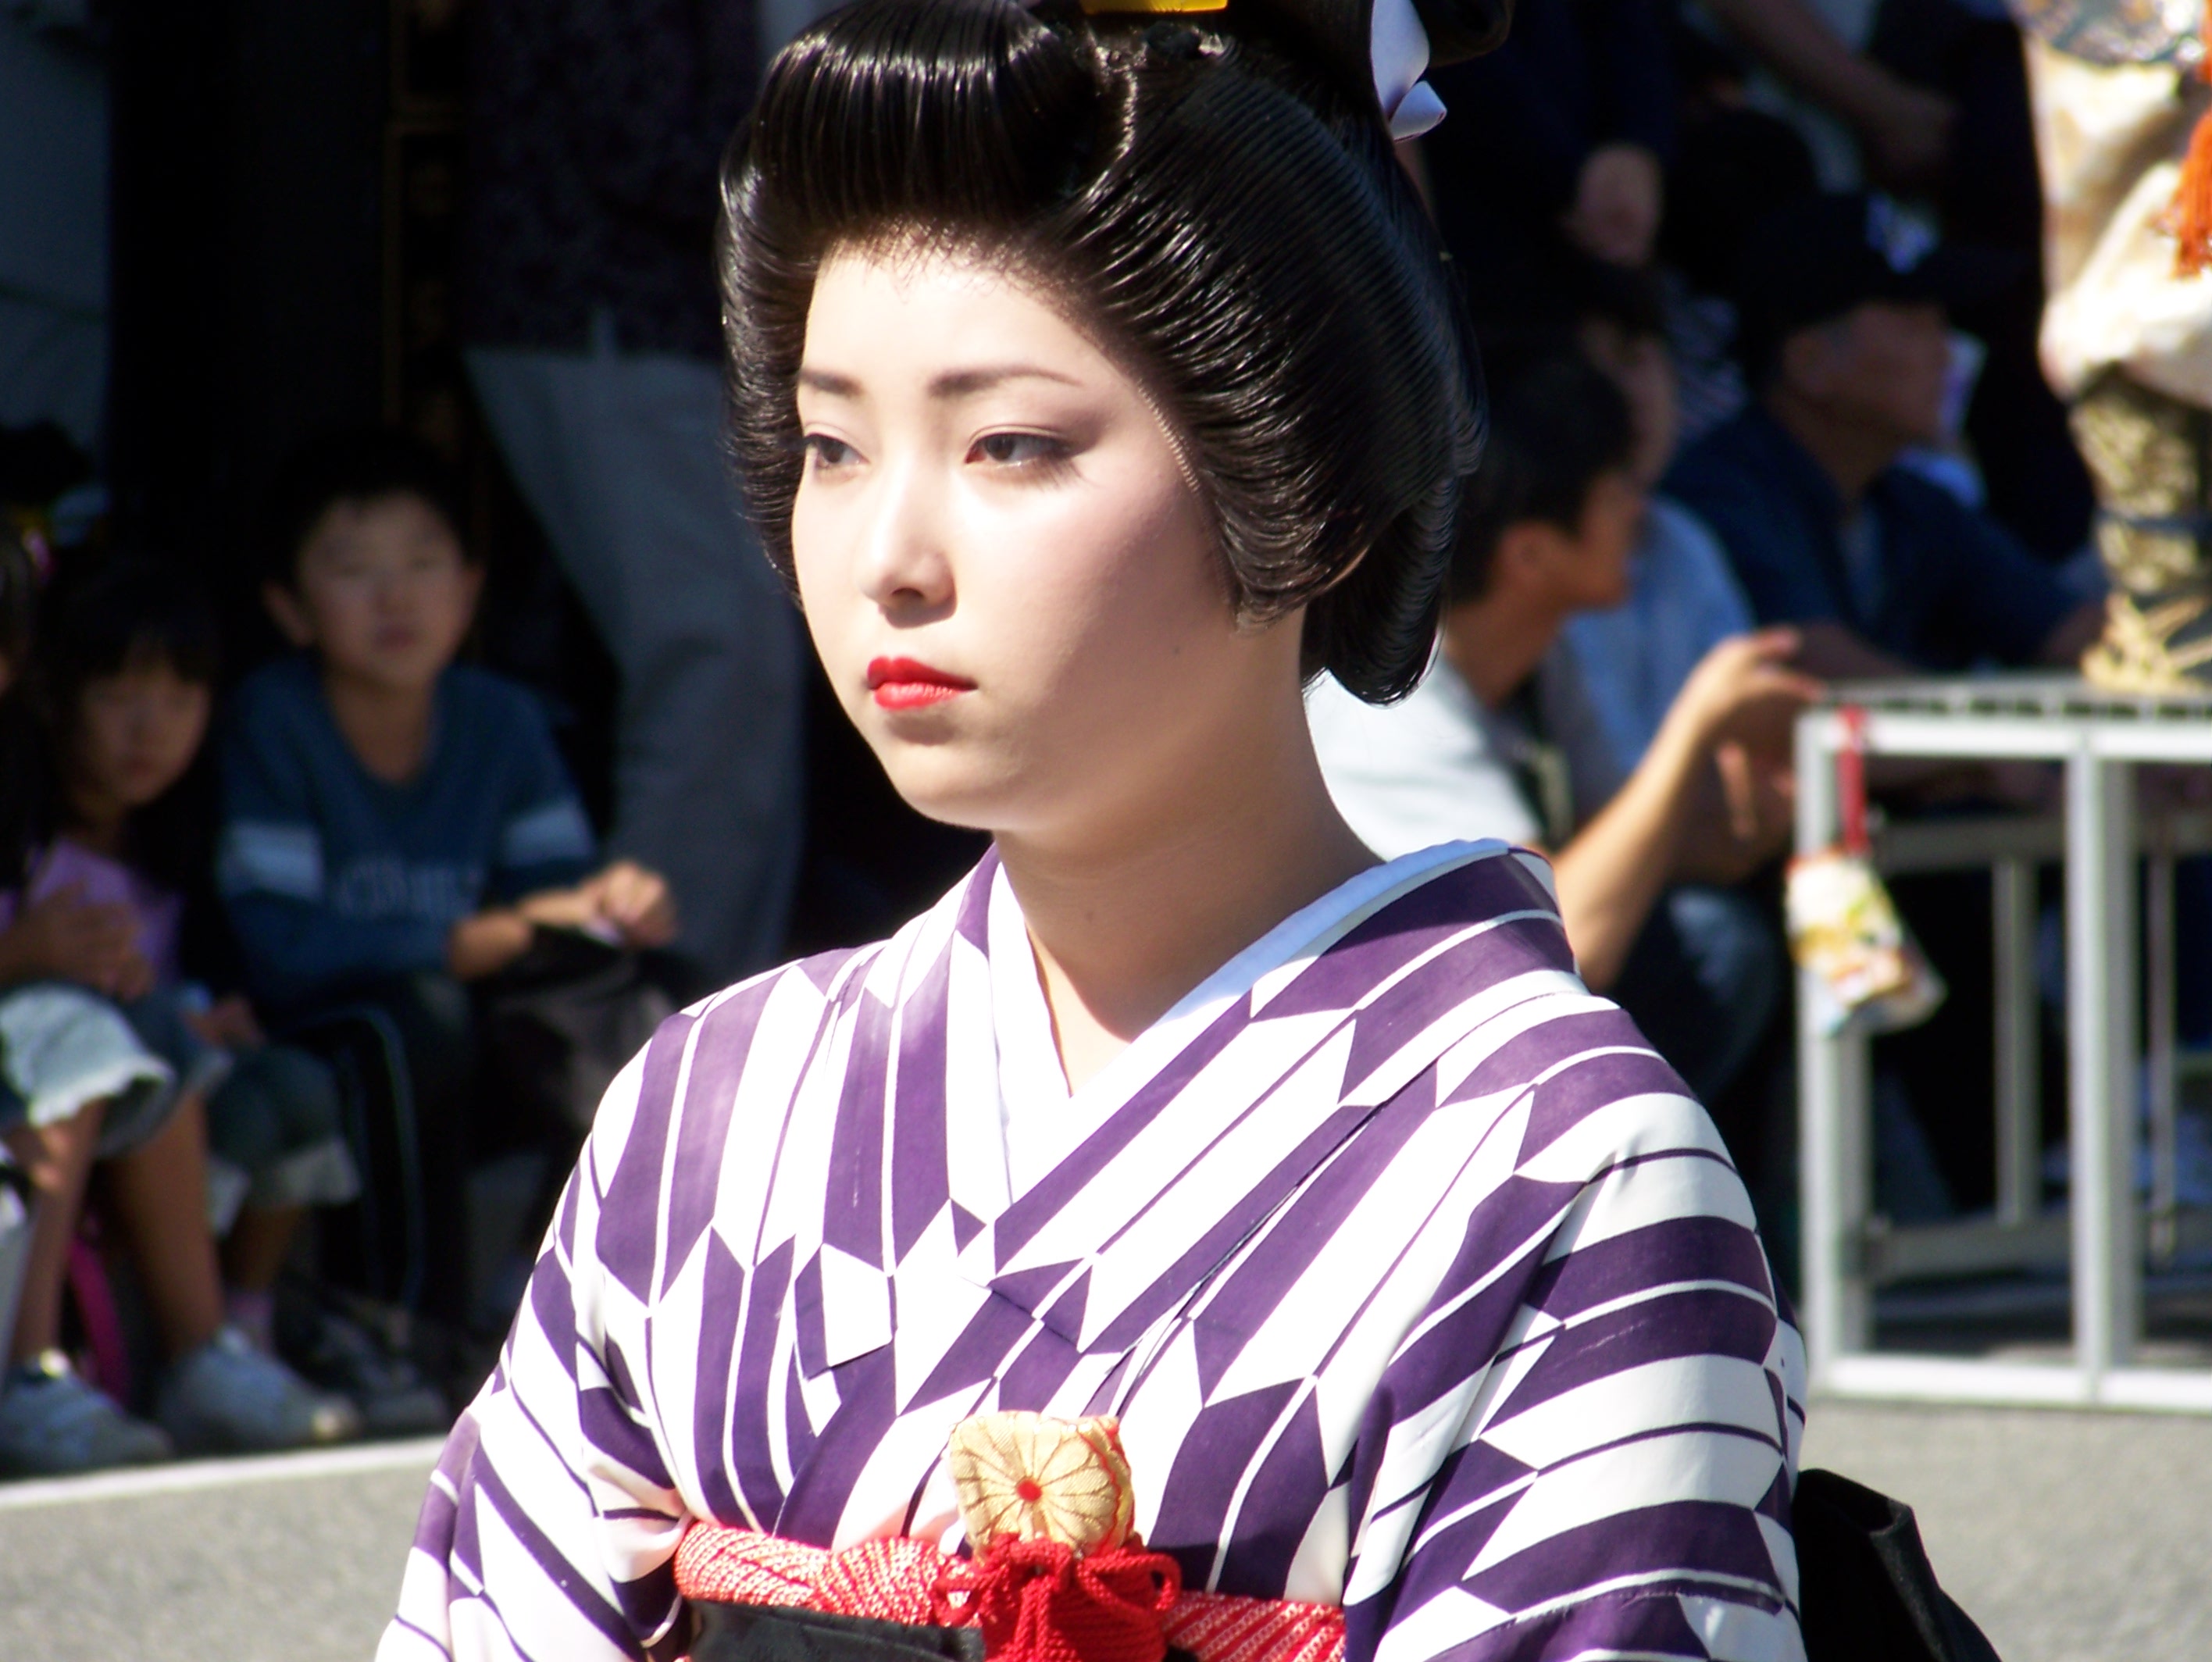 Kimono girl closeup in 2006 Aizu parade